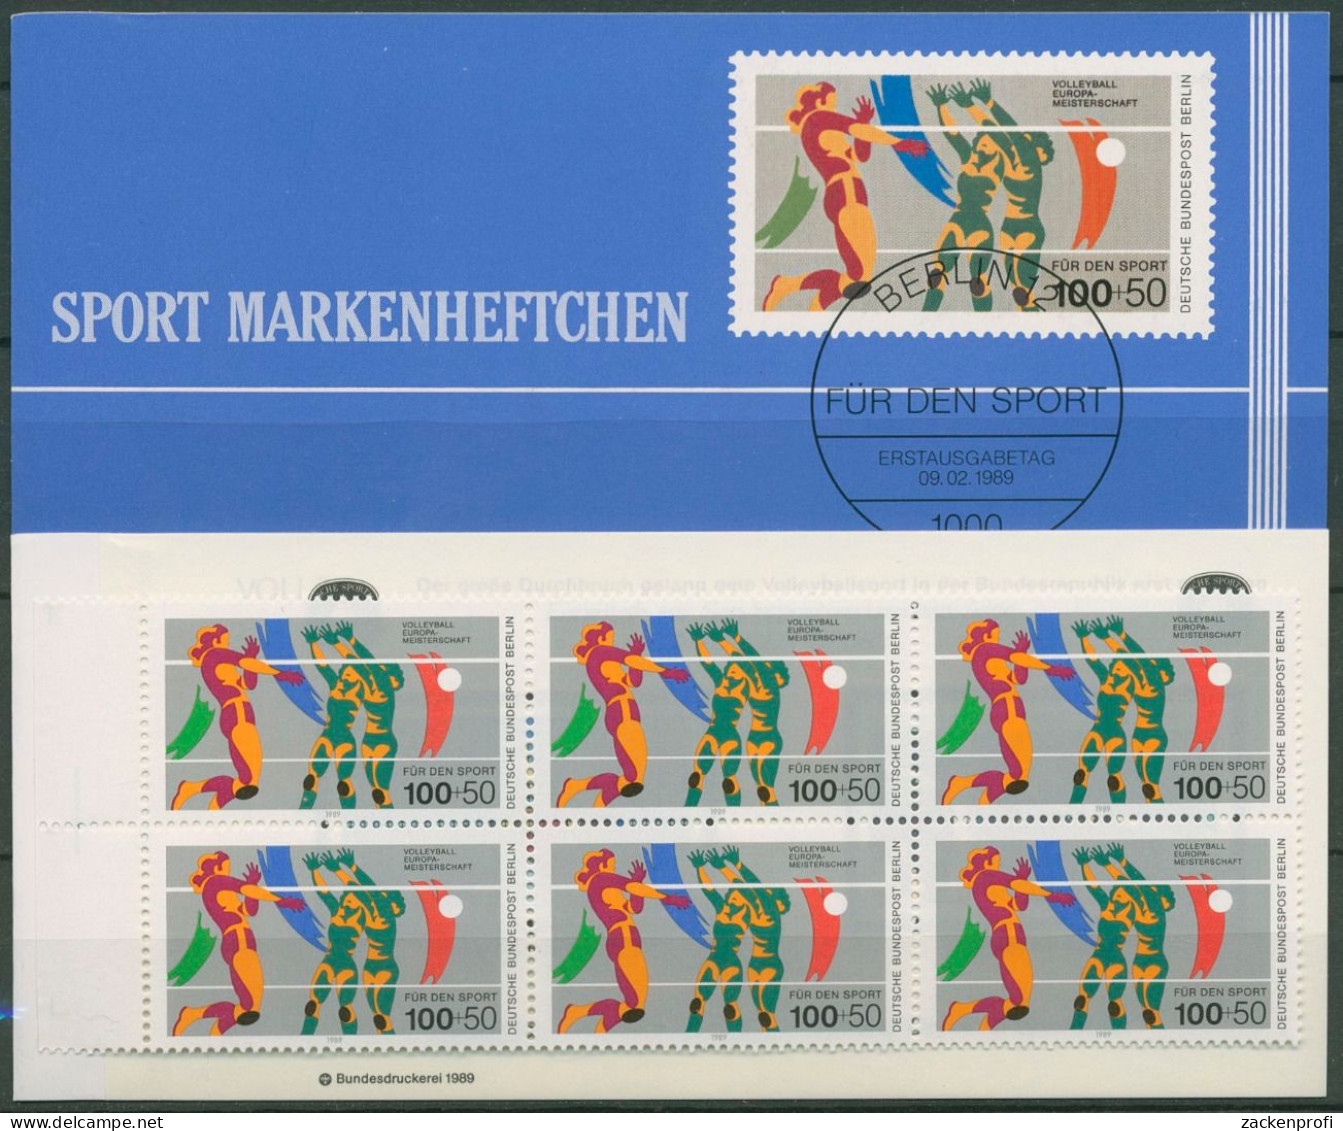 Berlin Deutsche Sporthilfe 1989 Markenheftchen SMH 11 (836) Postfrisch (C99137) - Markenheftchen